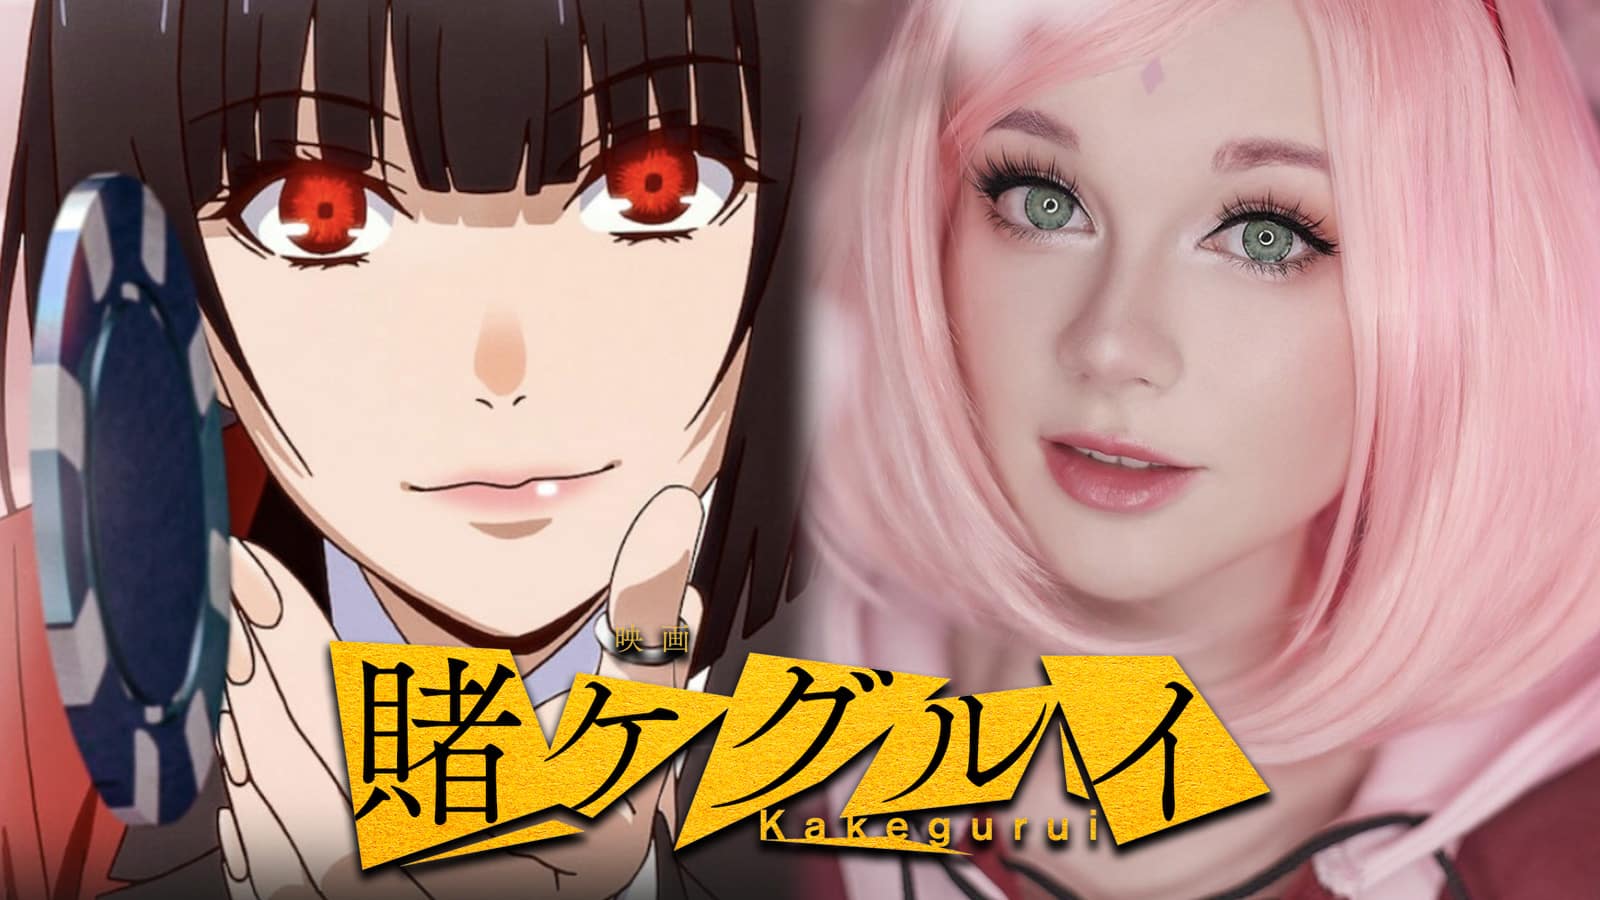 Kakegurui cosplayer becomes compulsive gambler Yumeko Jabami - Dexerto